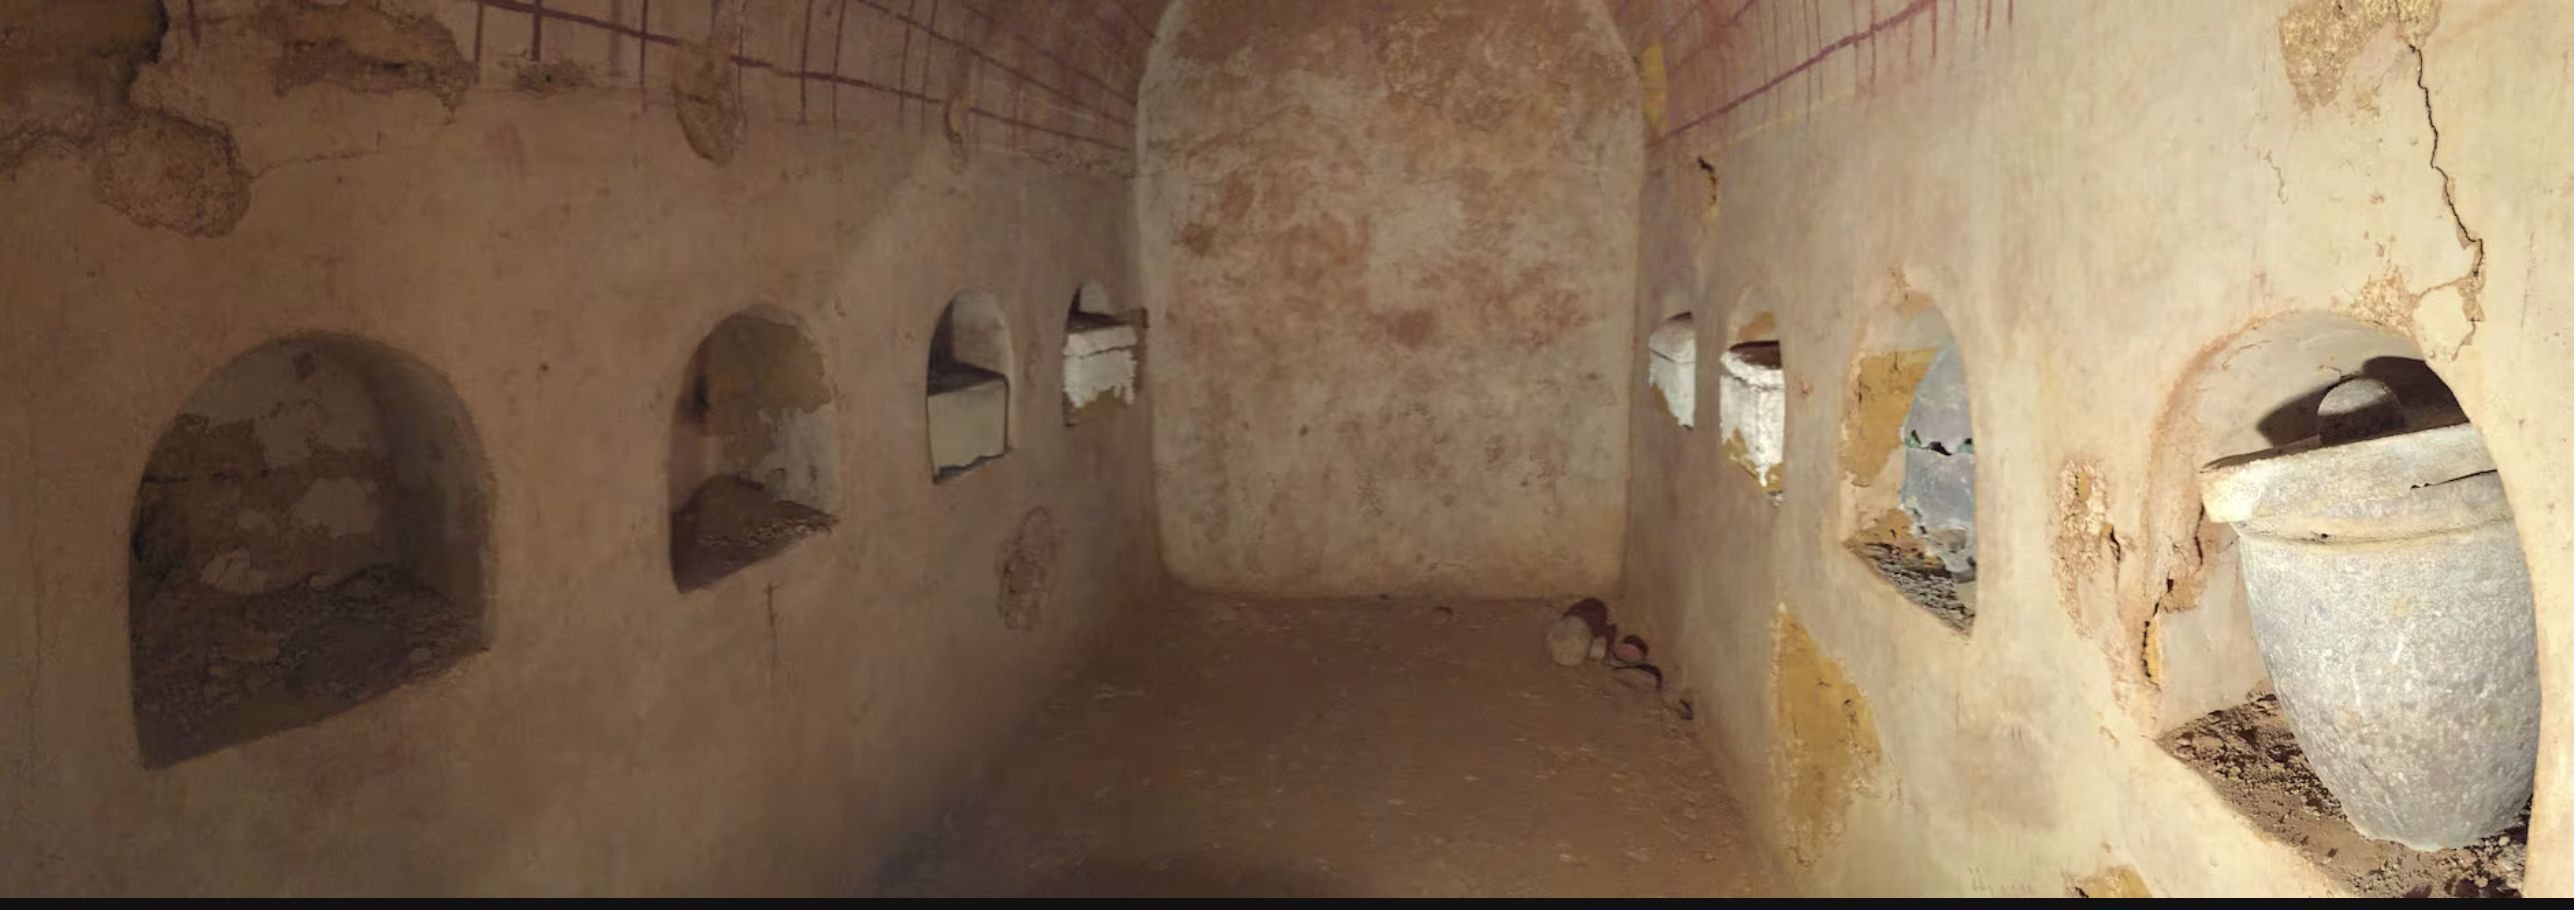 Túmulo romano descoberto em Carmona